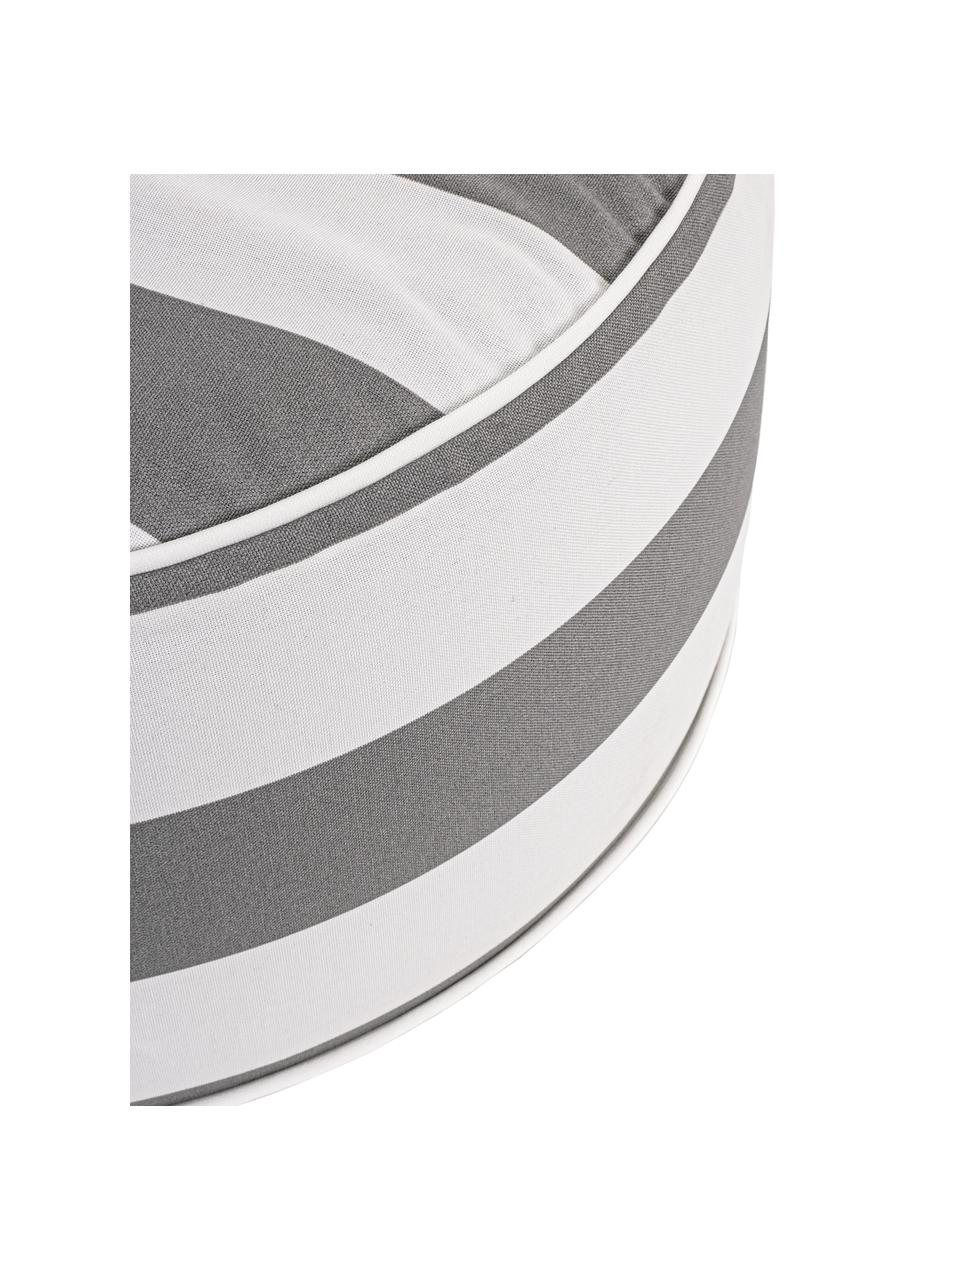 Nadmuchiwany puf zewnętrzny Stripes, Tapicerka: 100% tkanina poliestrowa , Biały, szary, Ø 53 x W 23 cm